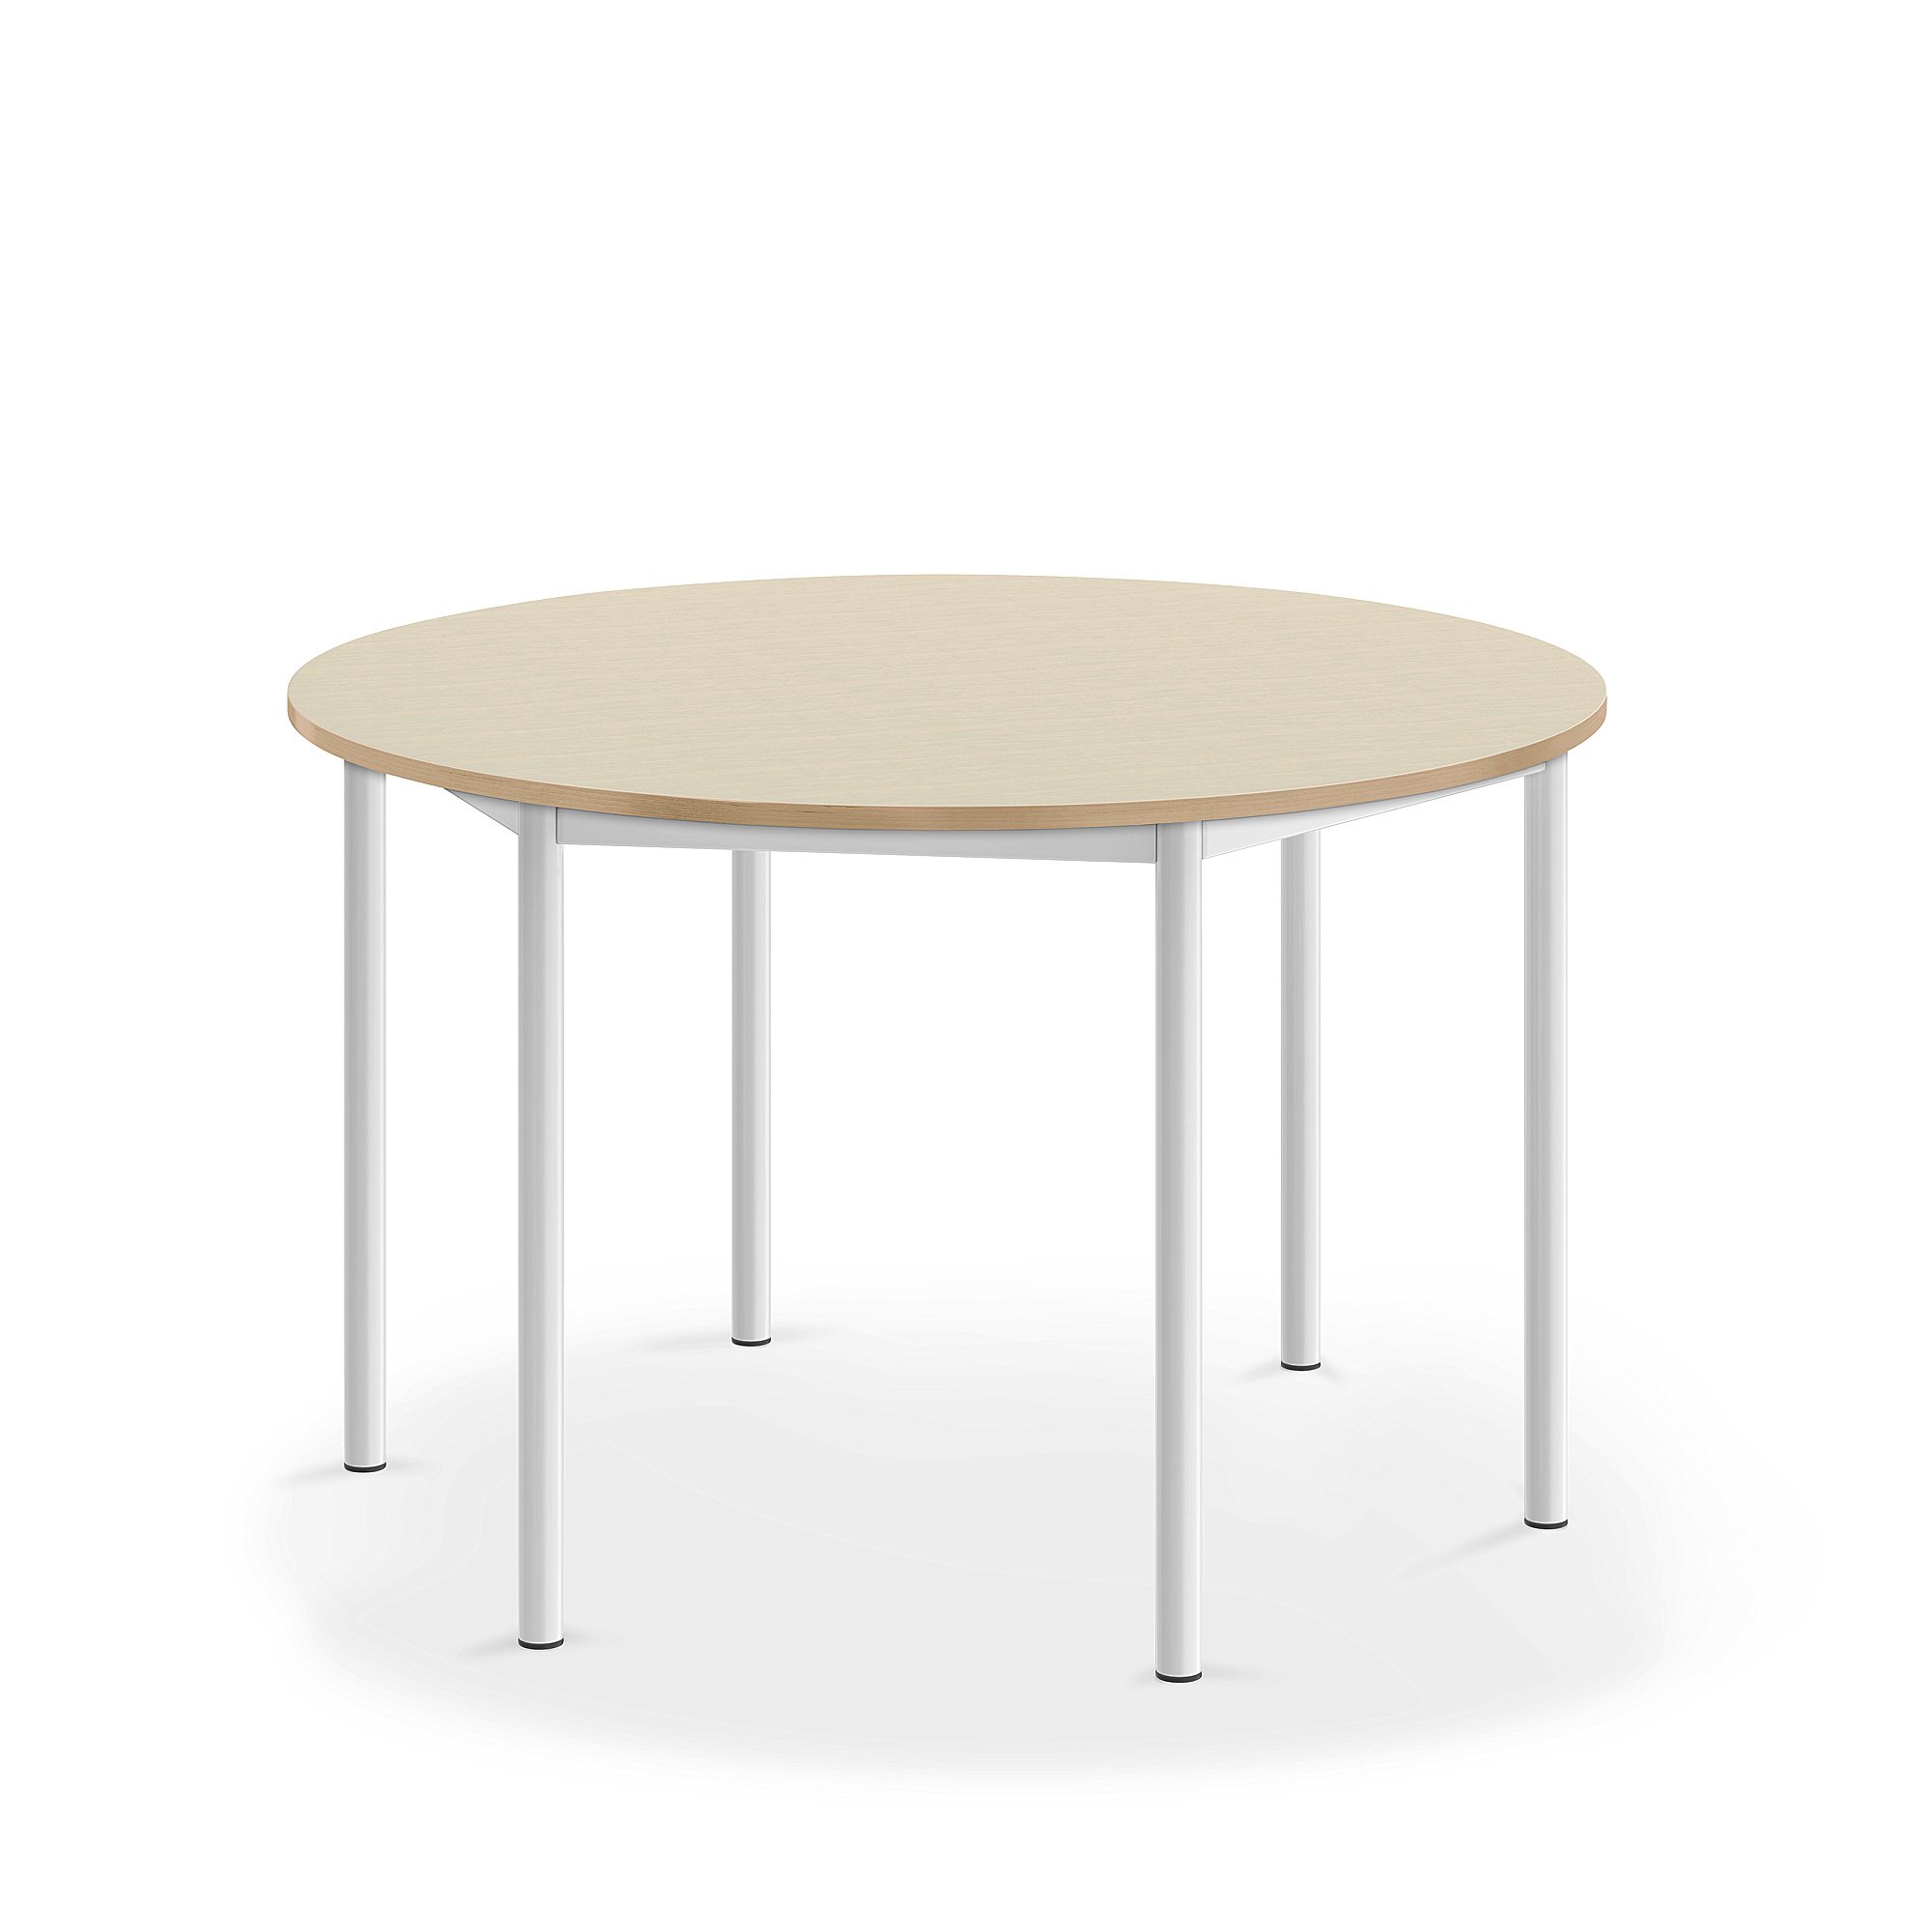 Stůl SONITUS, Ø1200x720 mm, bílé nohy, HPL deska tlumící hluk, bříza